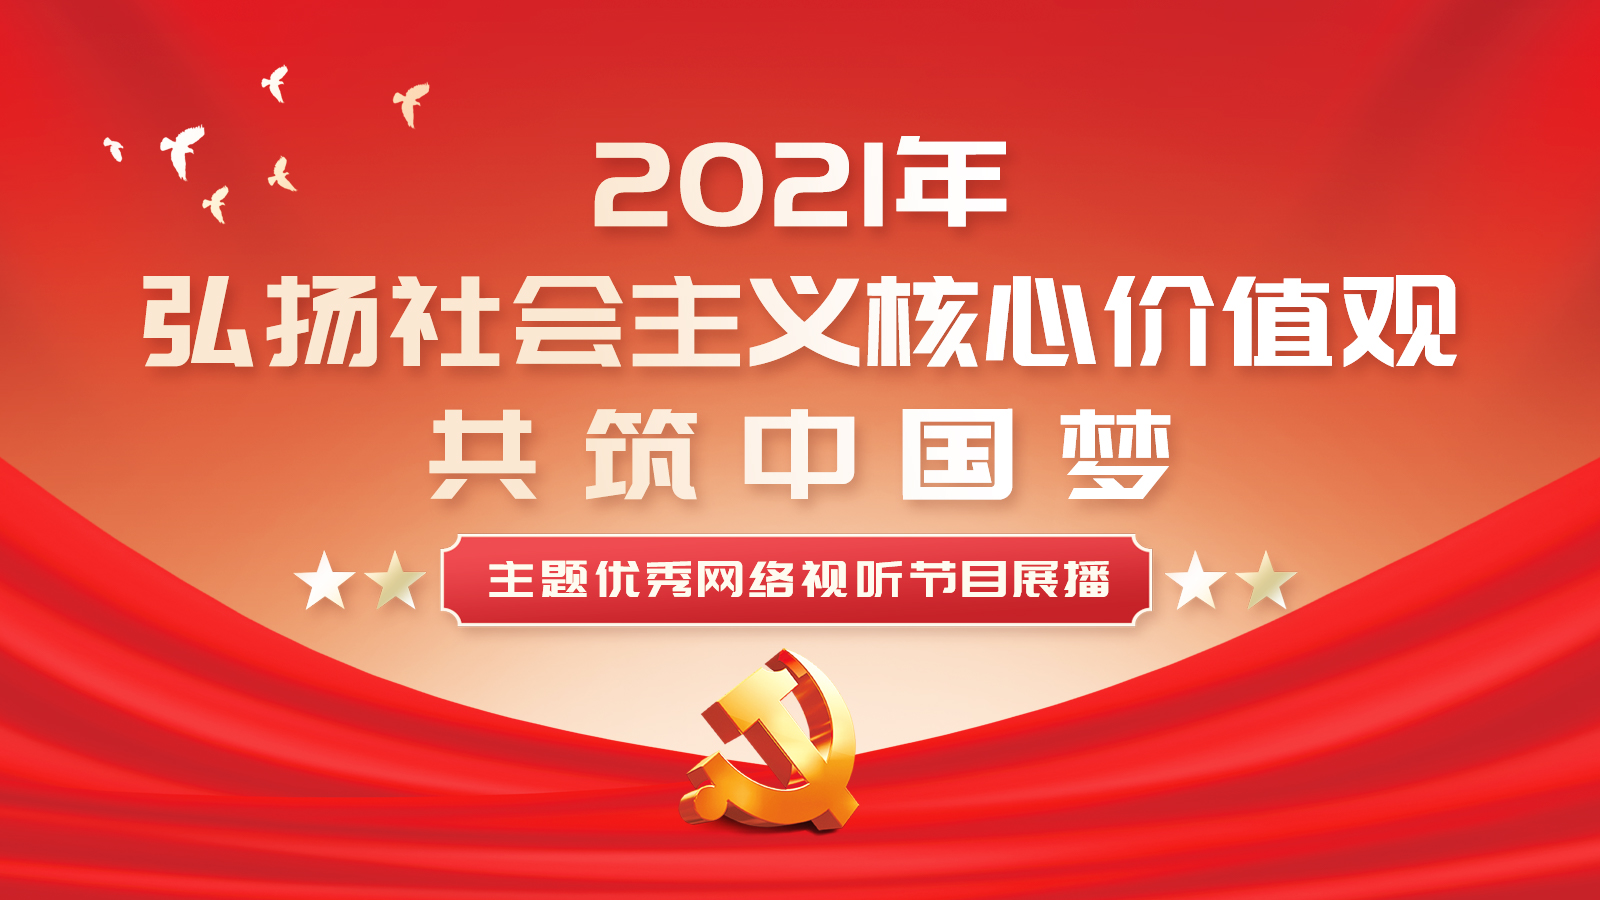 2021年“弘扬社会主义核心价值观 共筑中国梦”主题优秀网络视听节目展播